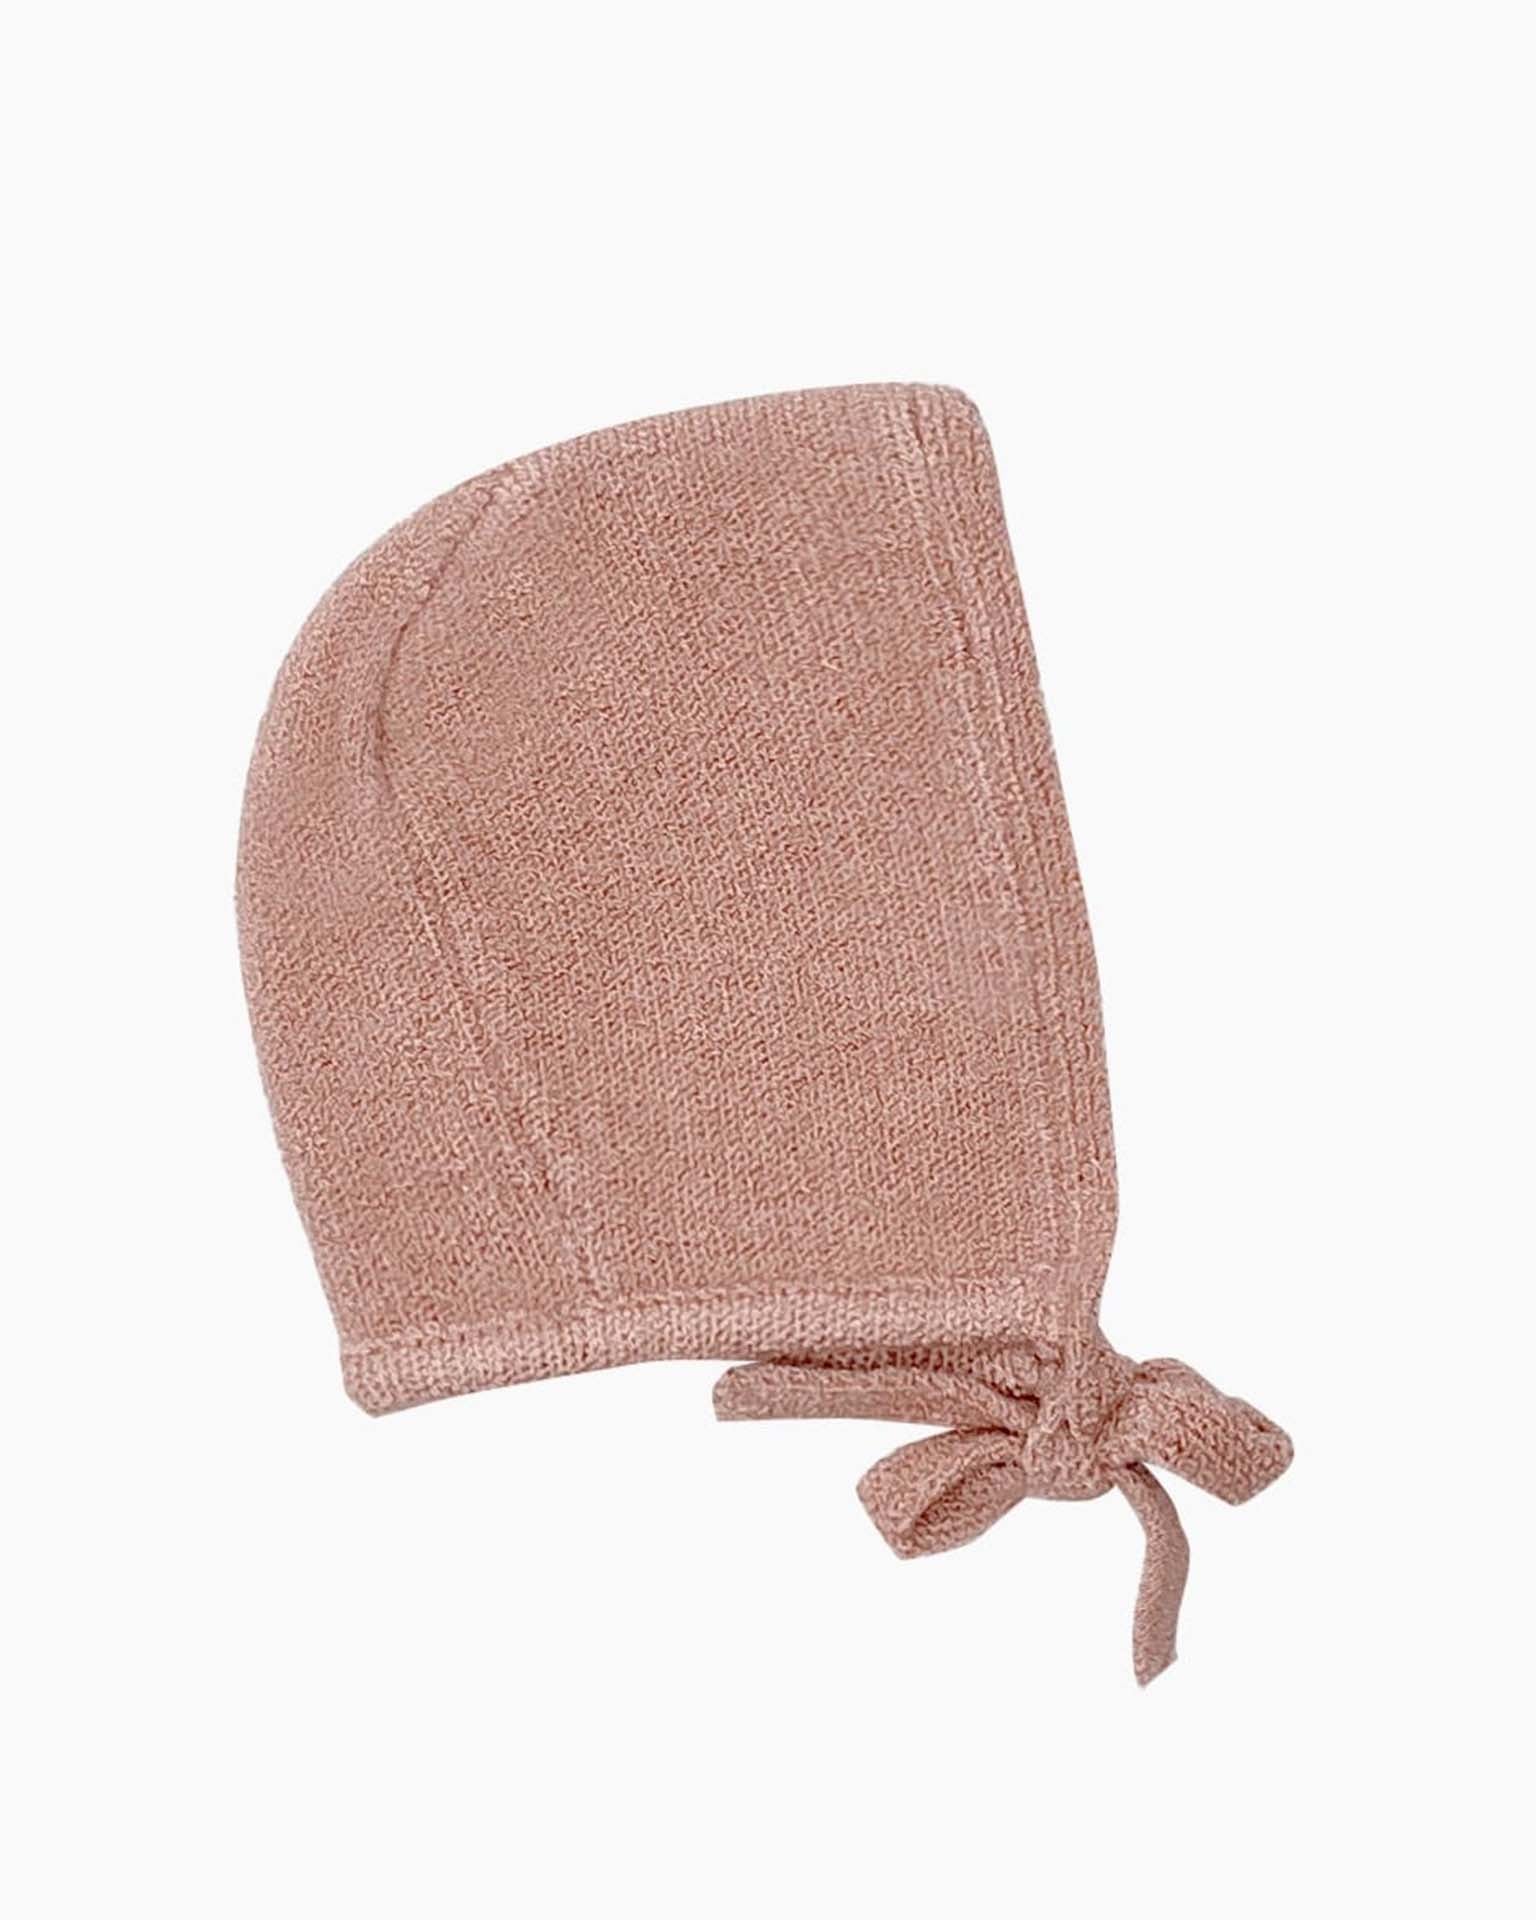 Little Minikane play knit bonnet in tea pink